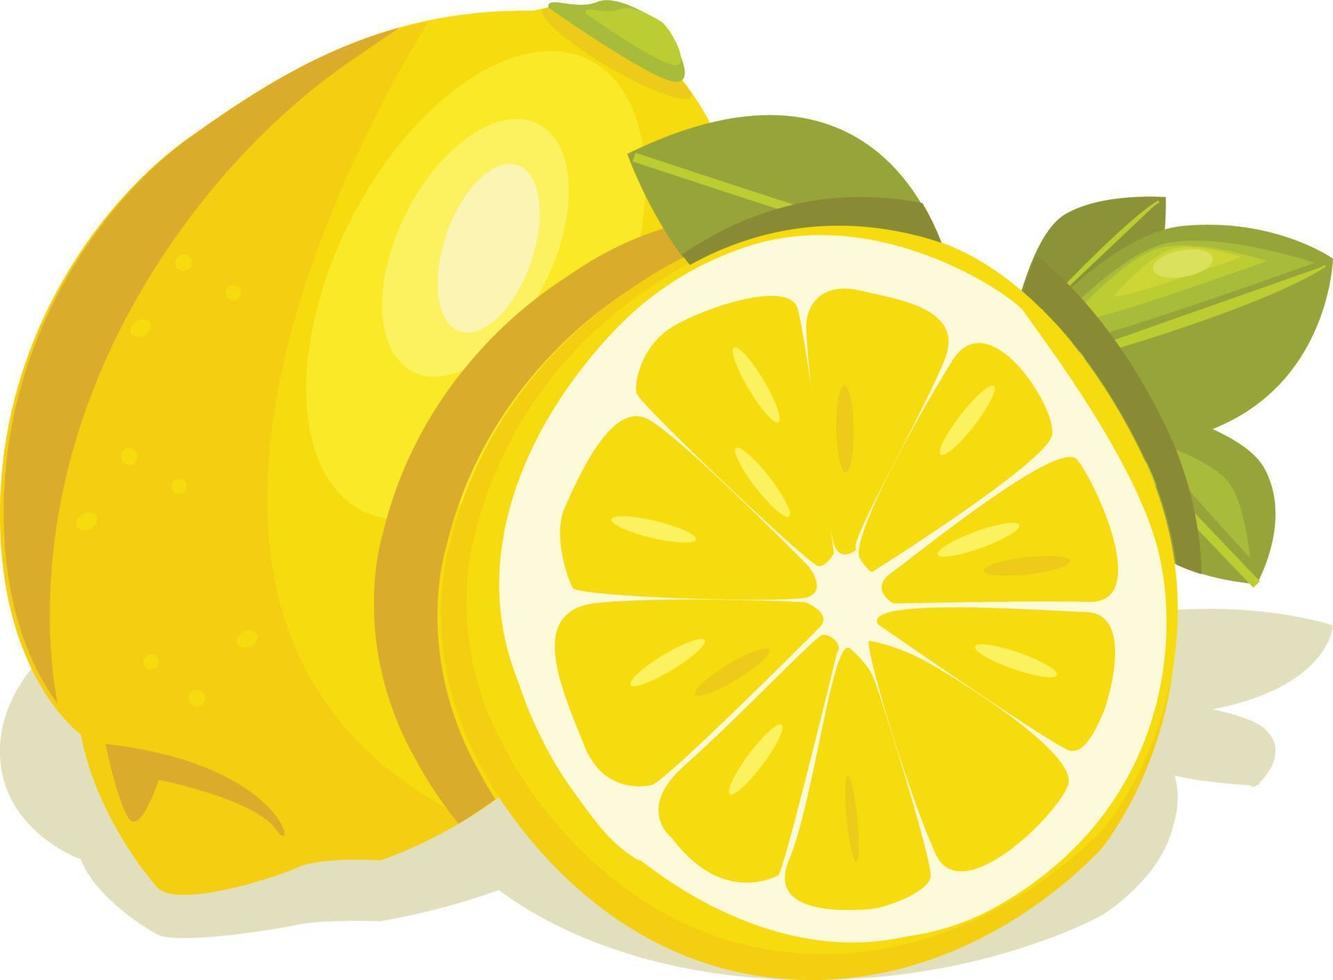 Lemon vegetable vector illustration